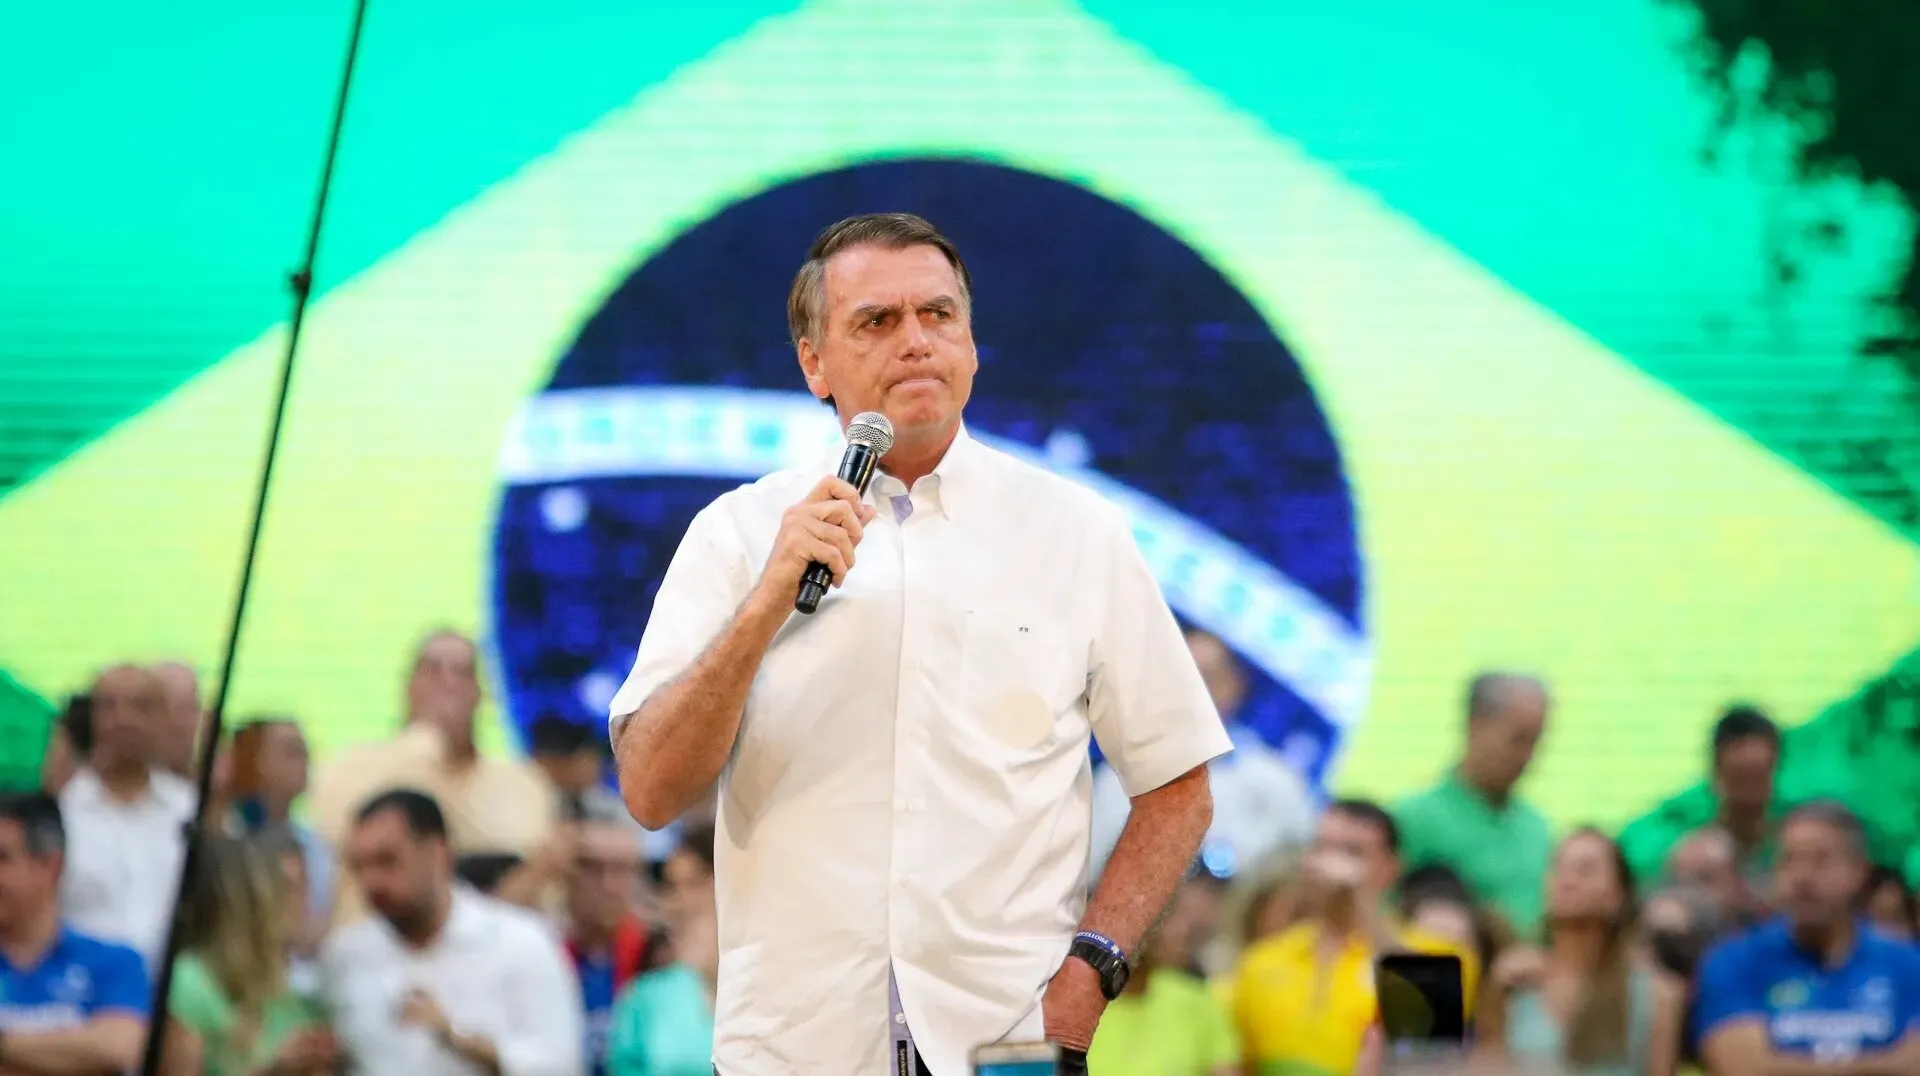 A manifestação tem como objetivo a defesa da democracia, segundo Bolsonaro